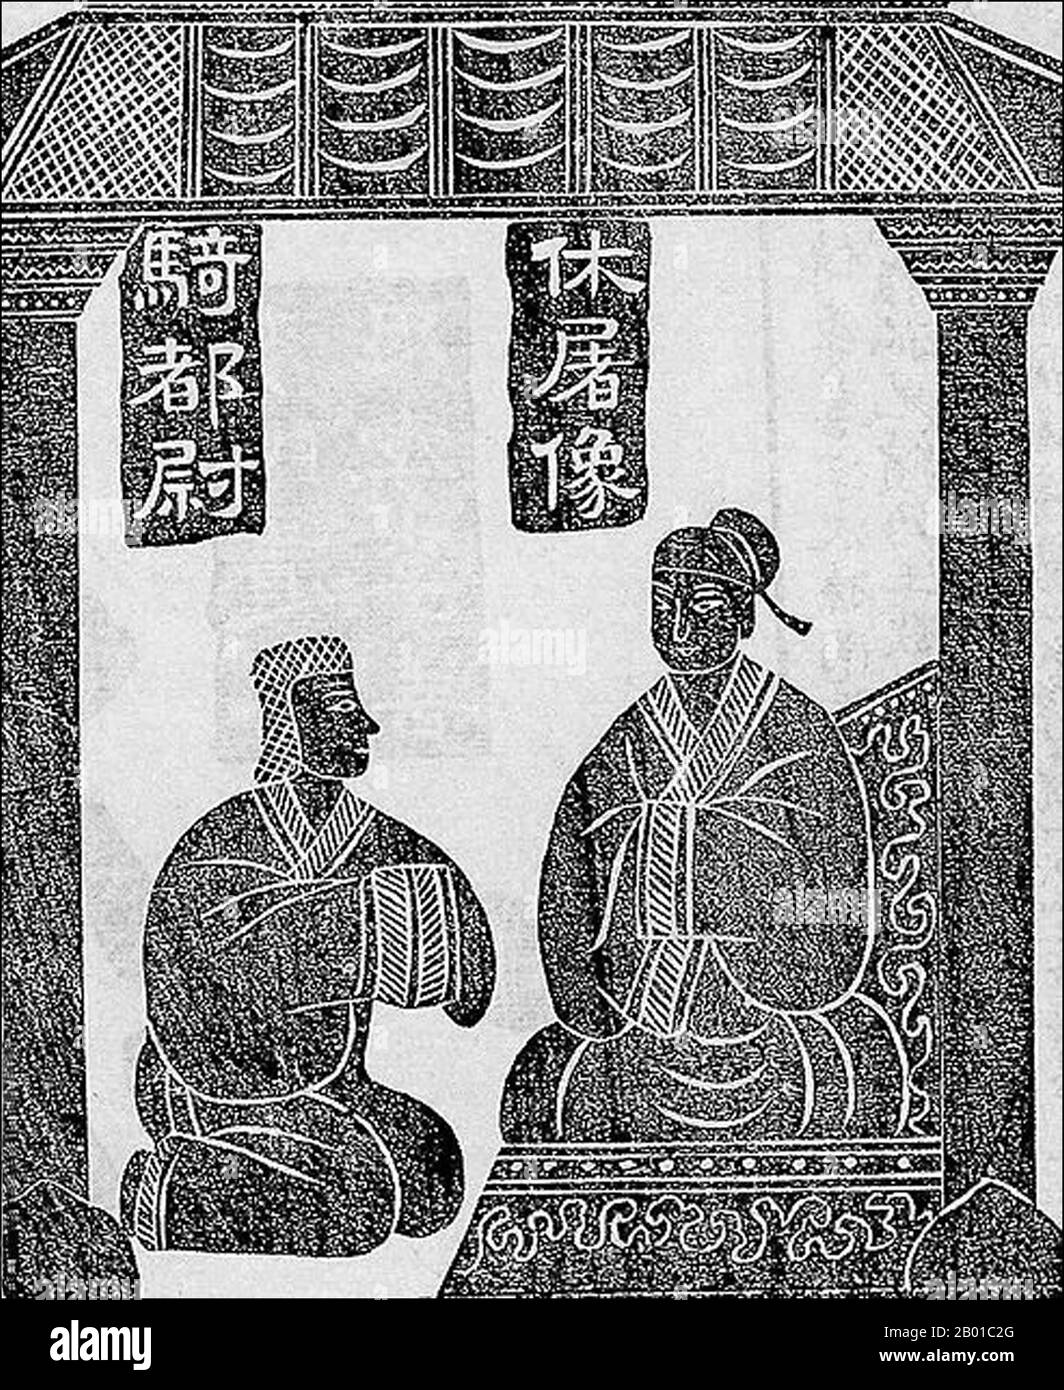 Cina: L'imperatore Wu di Han (r. 141-87 a.C.) con l'etnia Xiongnu co-reggente Jin Midi. Inchiostro sfregamento di rilievo di pietra dal Santuario di Wu Liang, Jiaxiang, provincia di Shandong, 2nd ° secolo CE. Jin Midi (134-86 a.C.) è stato un principe del nomade Xiongnu, una confederazione delle tribù dell'Asia centrale. Fu catturato dalle forze della dinastia Han e divenne uno schiavo che tendeva cavalli in scuderie imperiali. Tuttavia, ottenne la fiducia dell'imperatore Wu quando contrastò un tentativo di assassinio contro di lui. Quando l'imperatore Wu si mise a morire al suo capezzale, designò Jin Midi come uno dei suoi reggenti a governare il principe ereditario Liu Fuling. Foto Stock